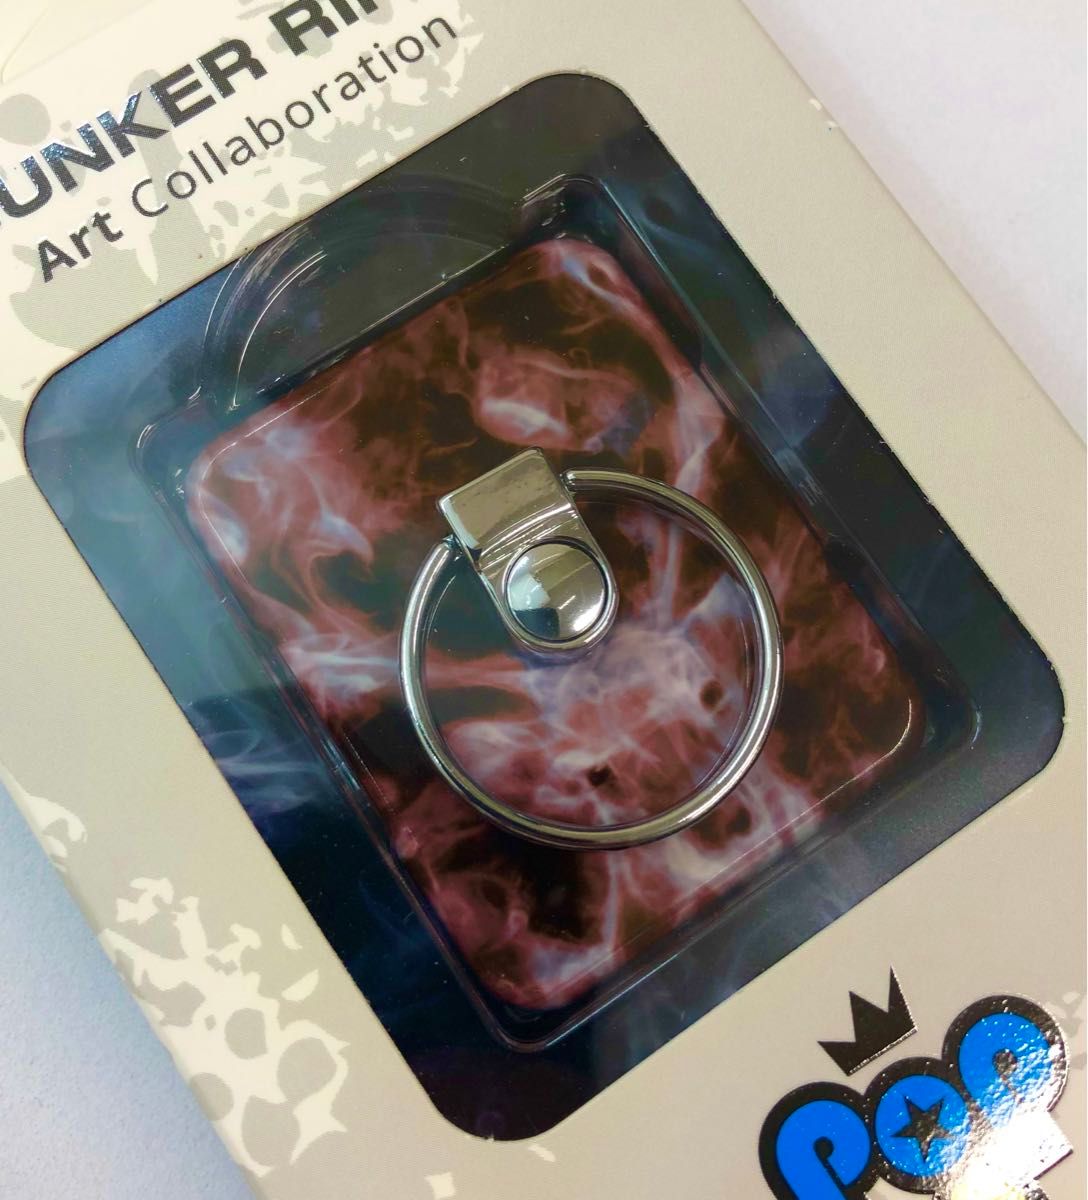 【新品】BUNKER RING アートコラボレーション限定品 JungAnyong